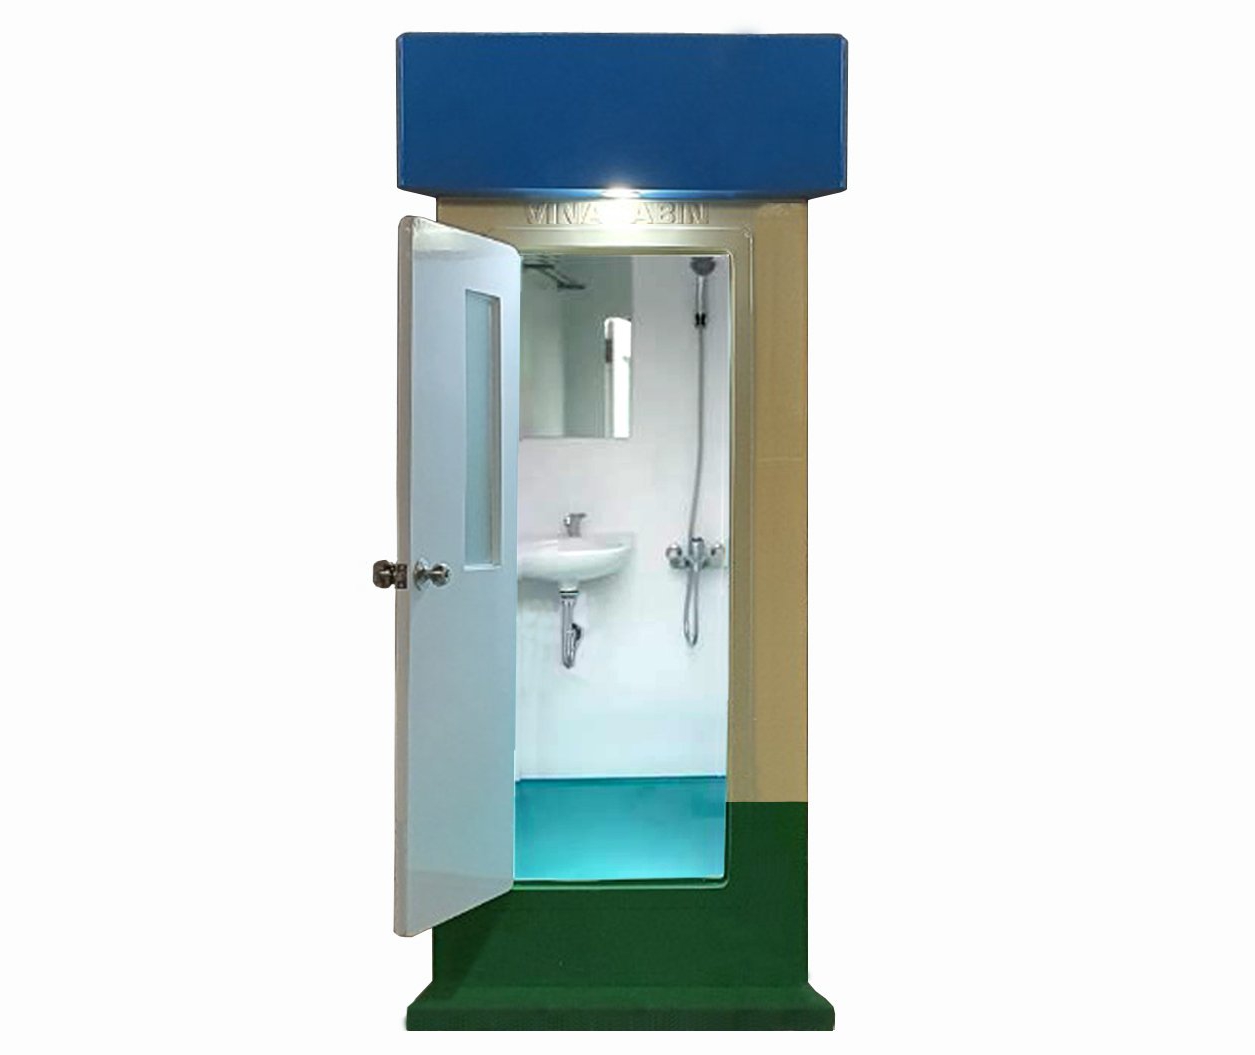 Cabin phòng tắm di động Vinacabin V18.1S